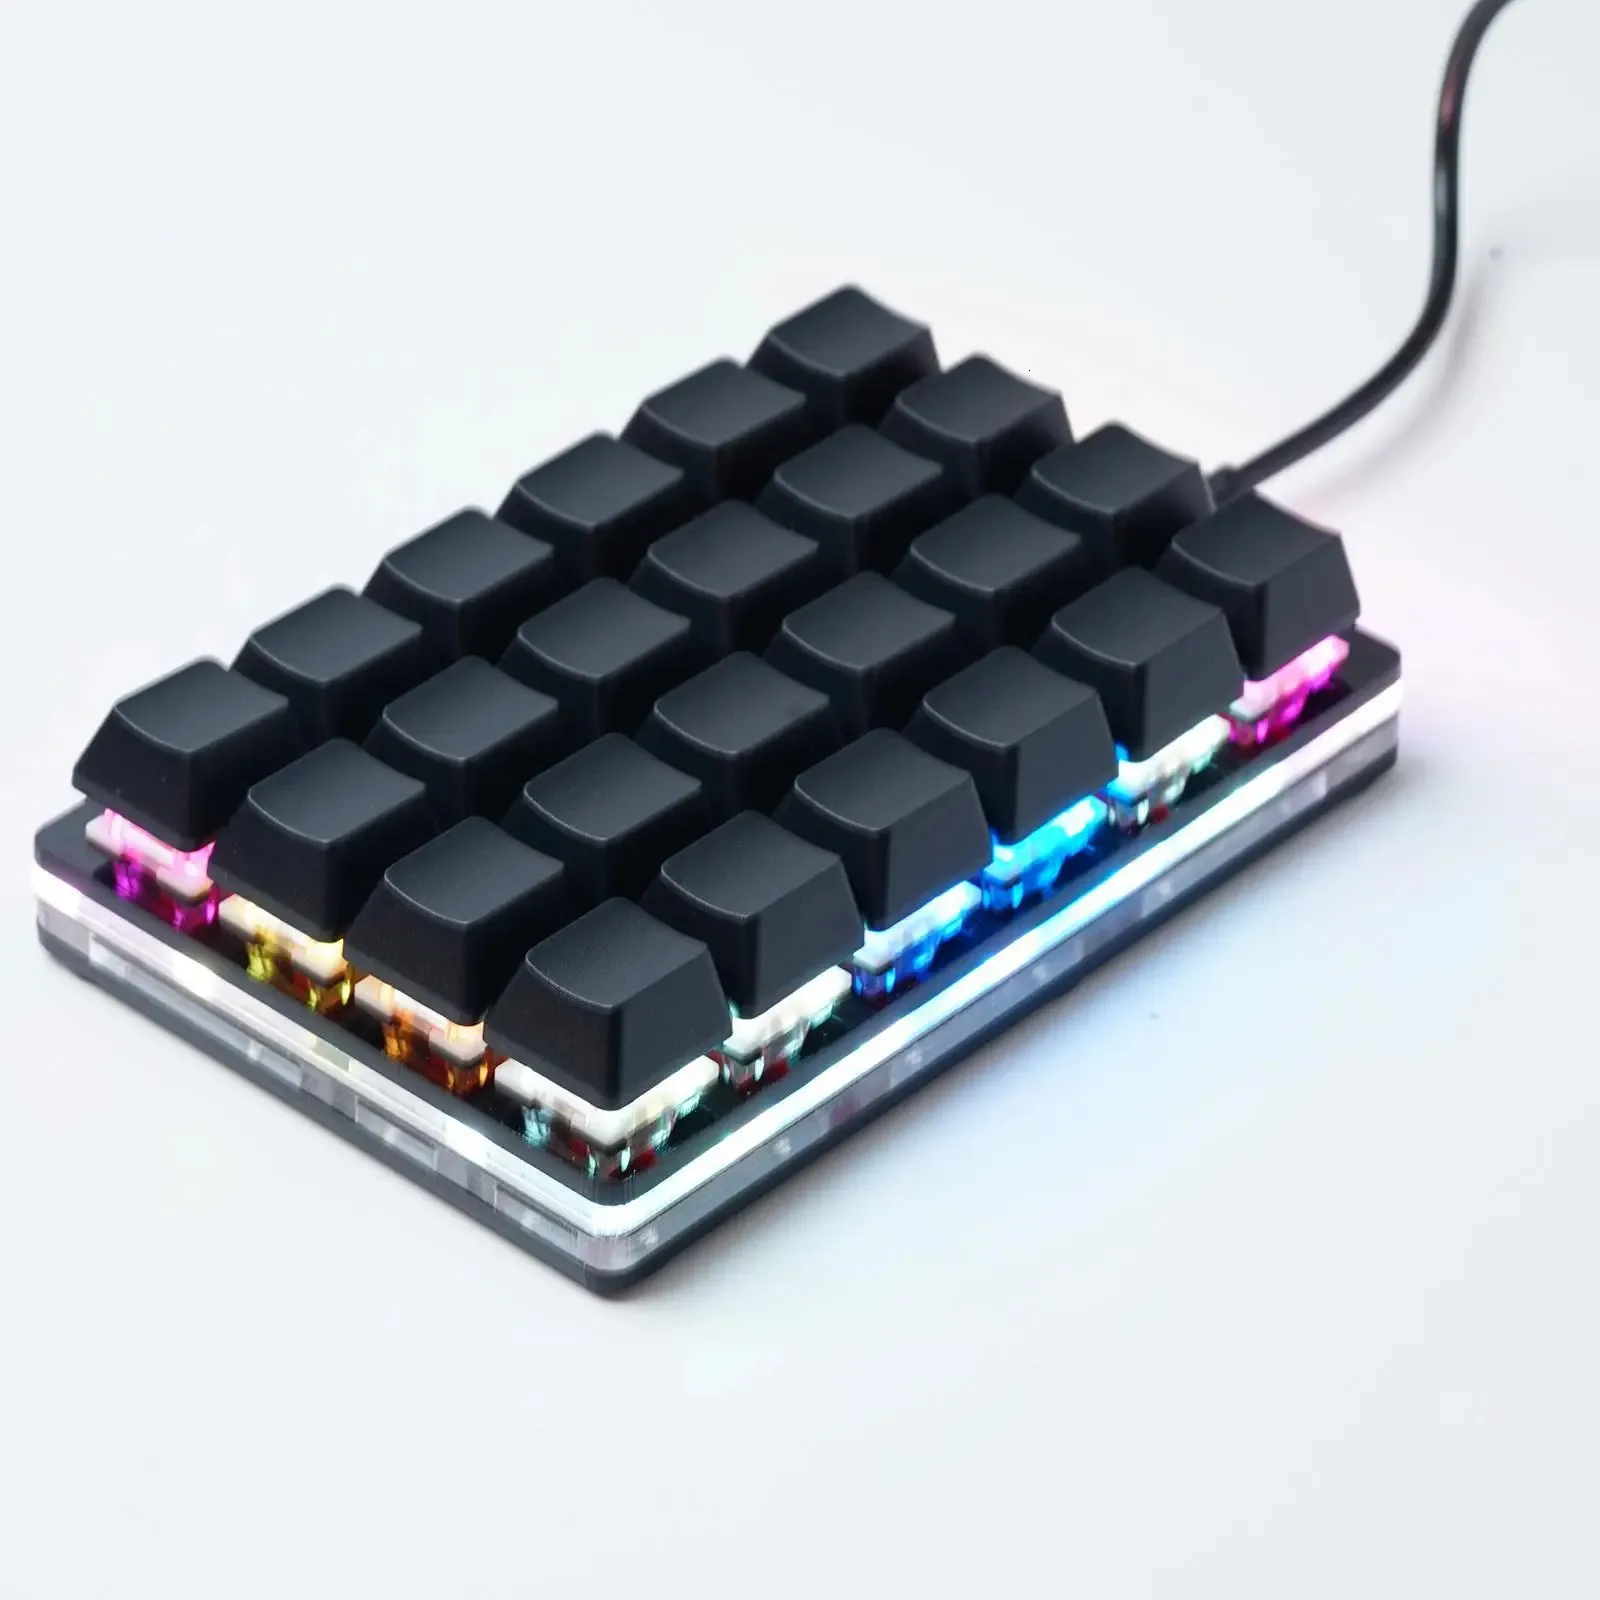 Keyboard Mini Black 24 Klawisz Mechaniczna klawiatura 25916 Klawisz Gaming Keyboard Sayo Urządzenie Programowanie klawiatury